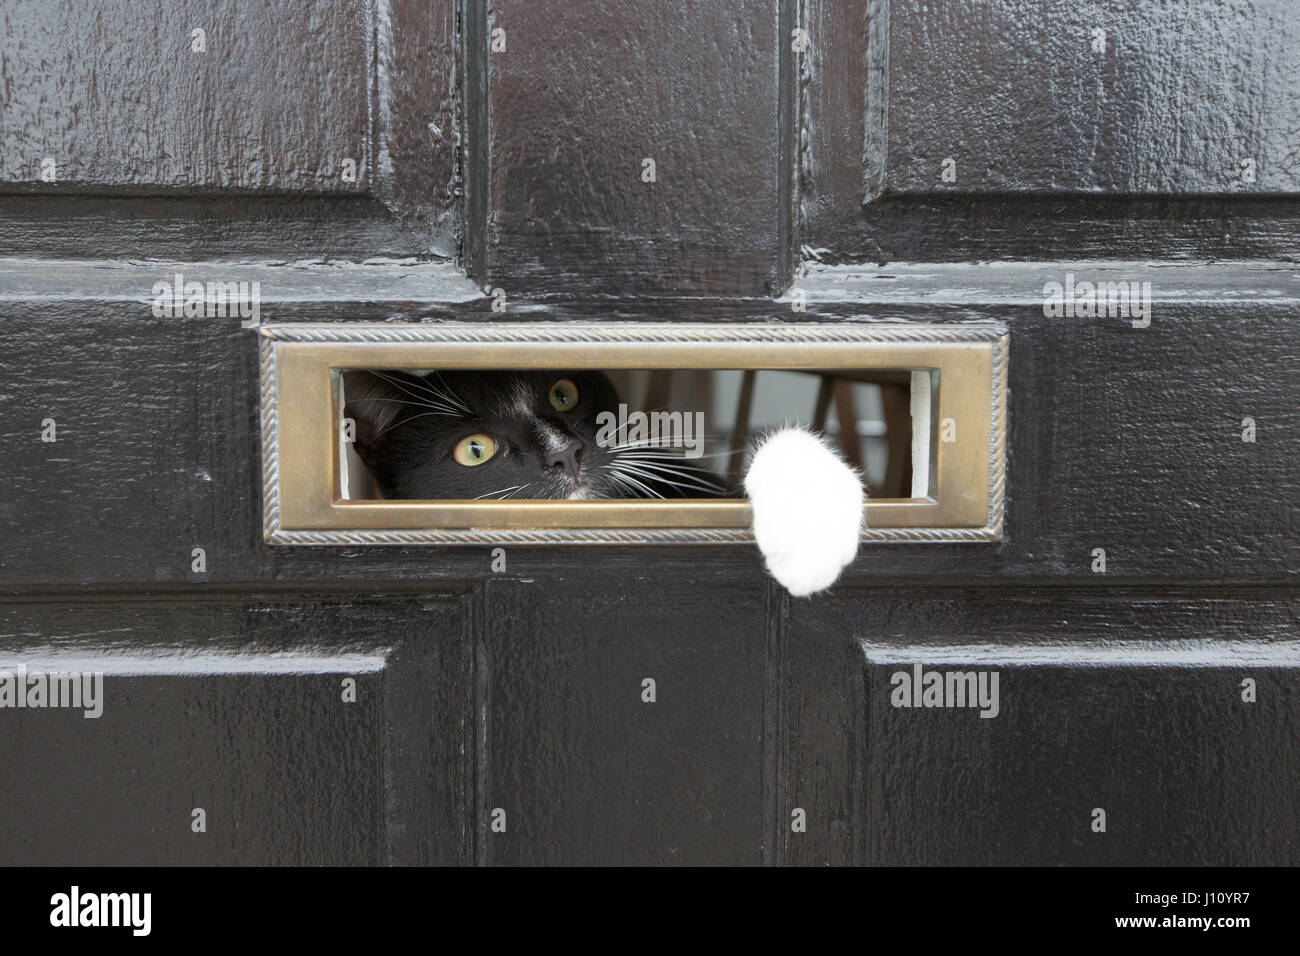 Un gato mirando a través de un buzón Foto de stock